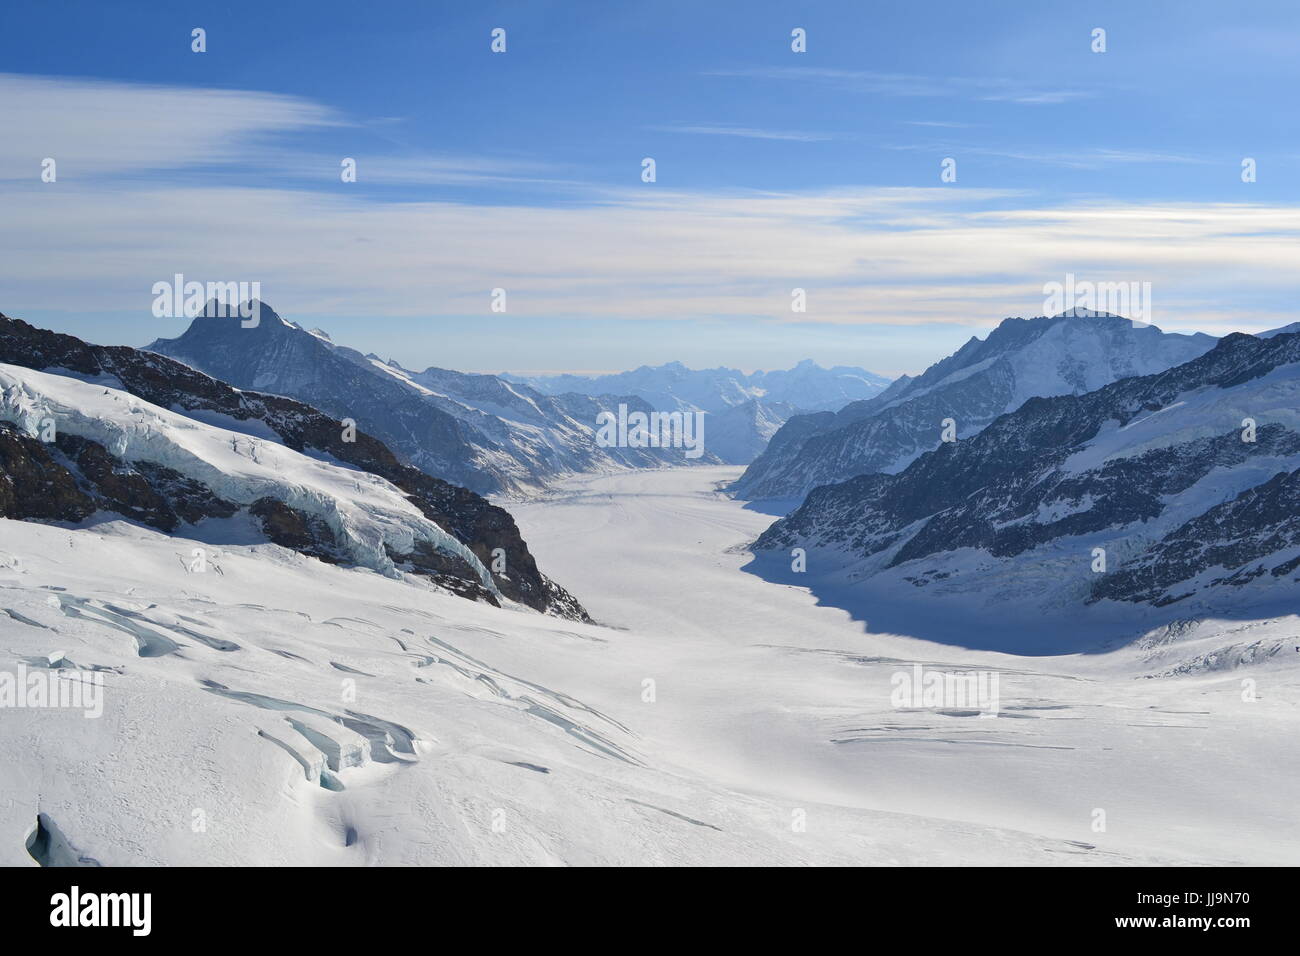 Mundo glaciar alpino. Cima de los alpes suizos en el jungfraujoch. Foto de stock